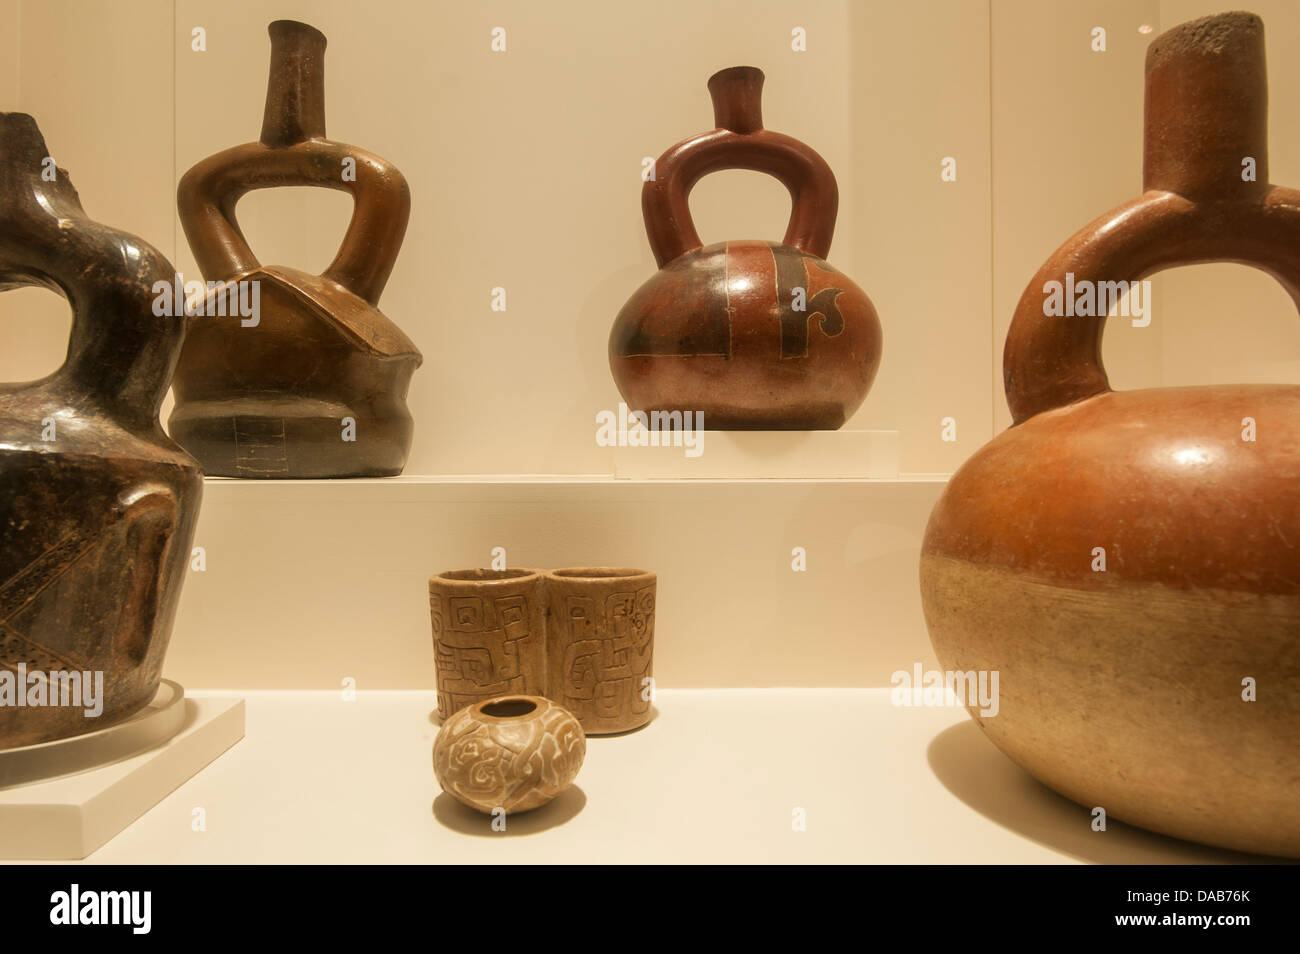 Inca Inca précolombien ancien vase Poterie argile art archéologiques objets s'affichent dans le Musée Larco, Lima, Pérou. Banque D'Images